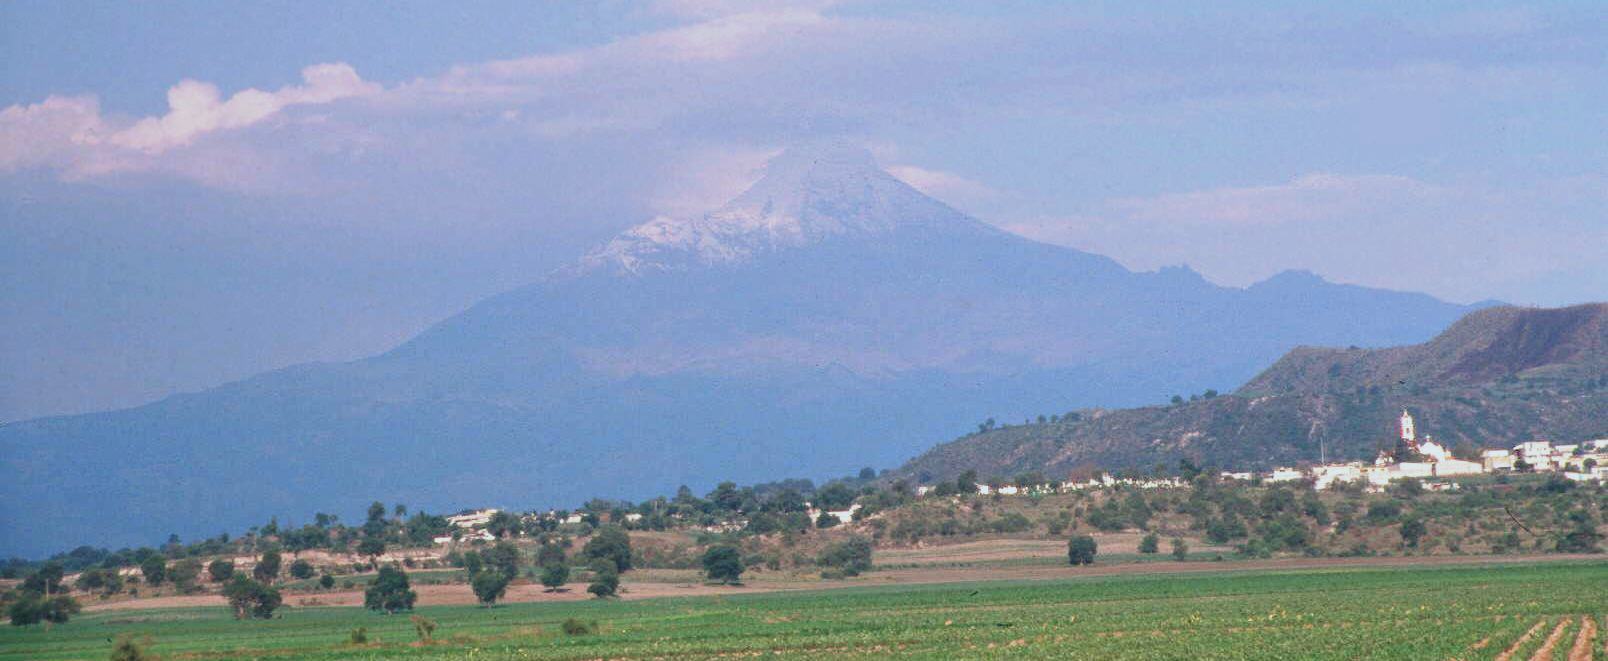 Pico de Citlaltepelt